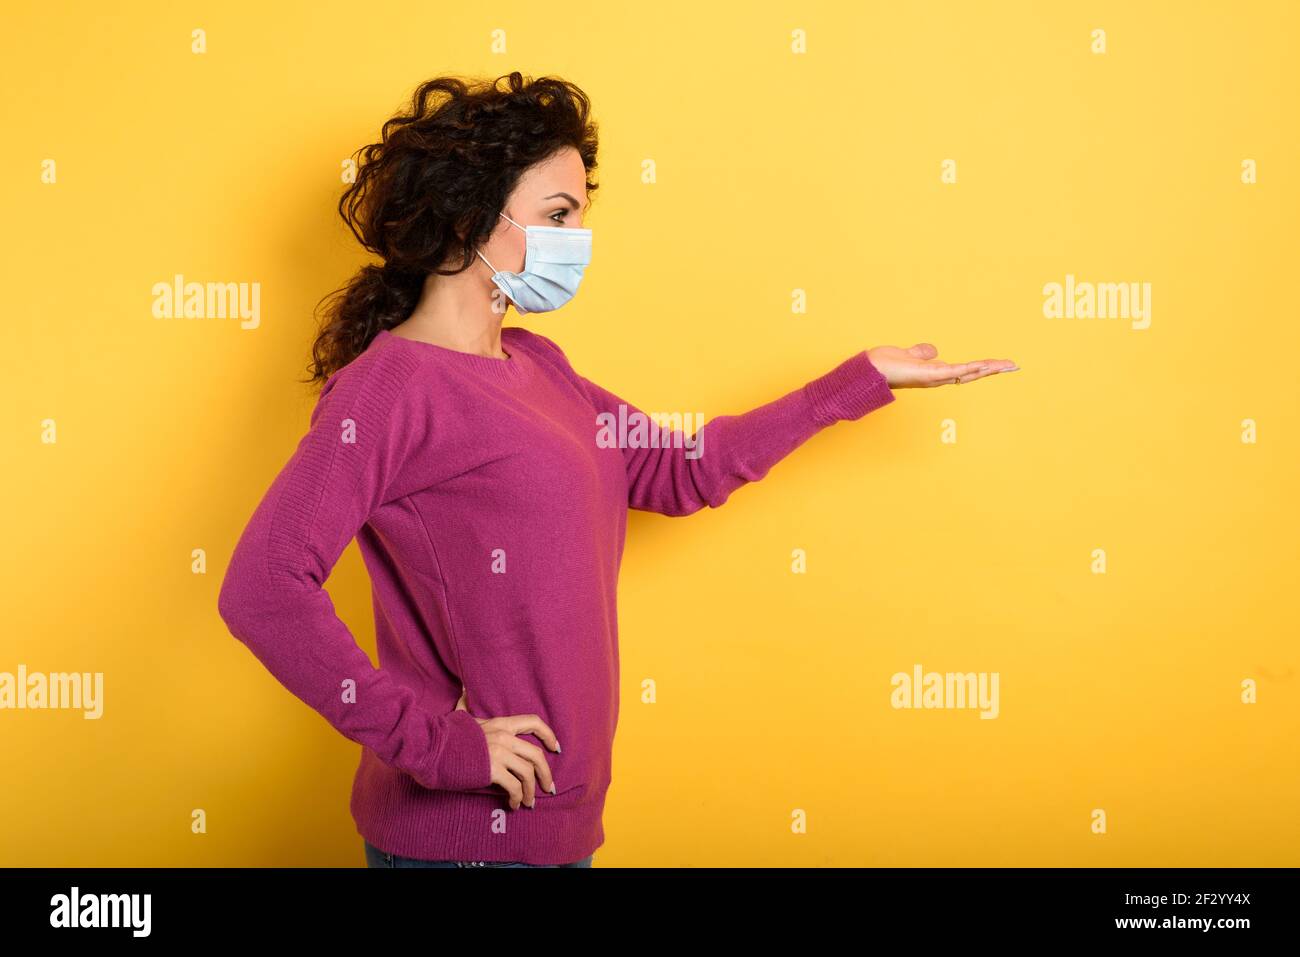 Nachdenkliche Frau mit Gesichtsmaske hält etwas in der Hand. Gelber Hintergrund Stockfoto